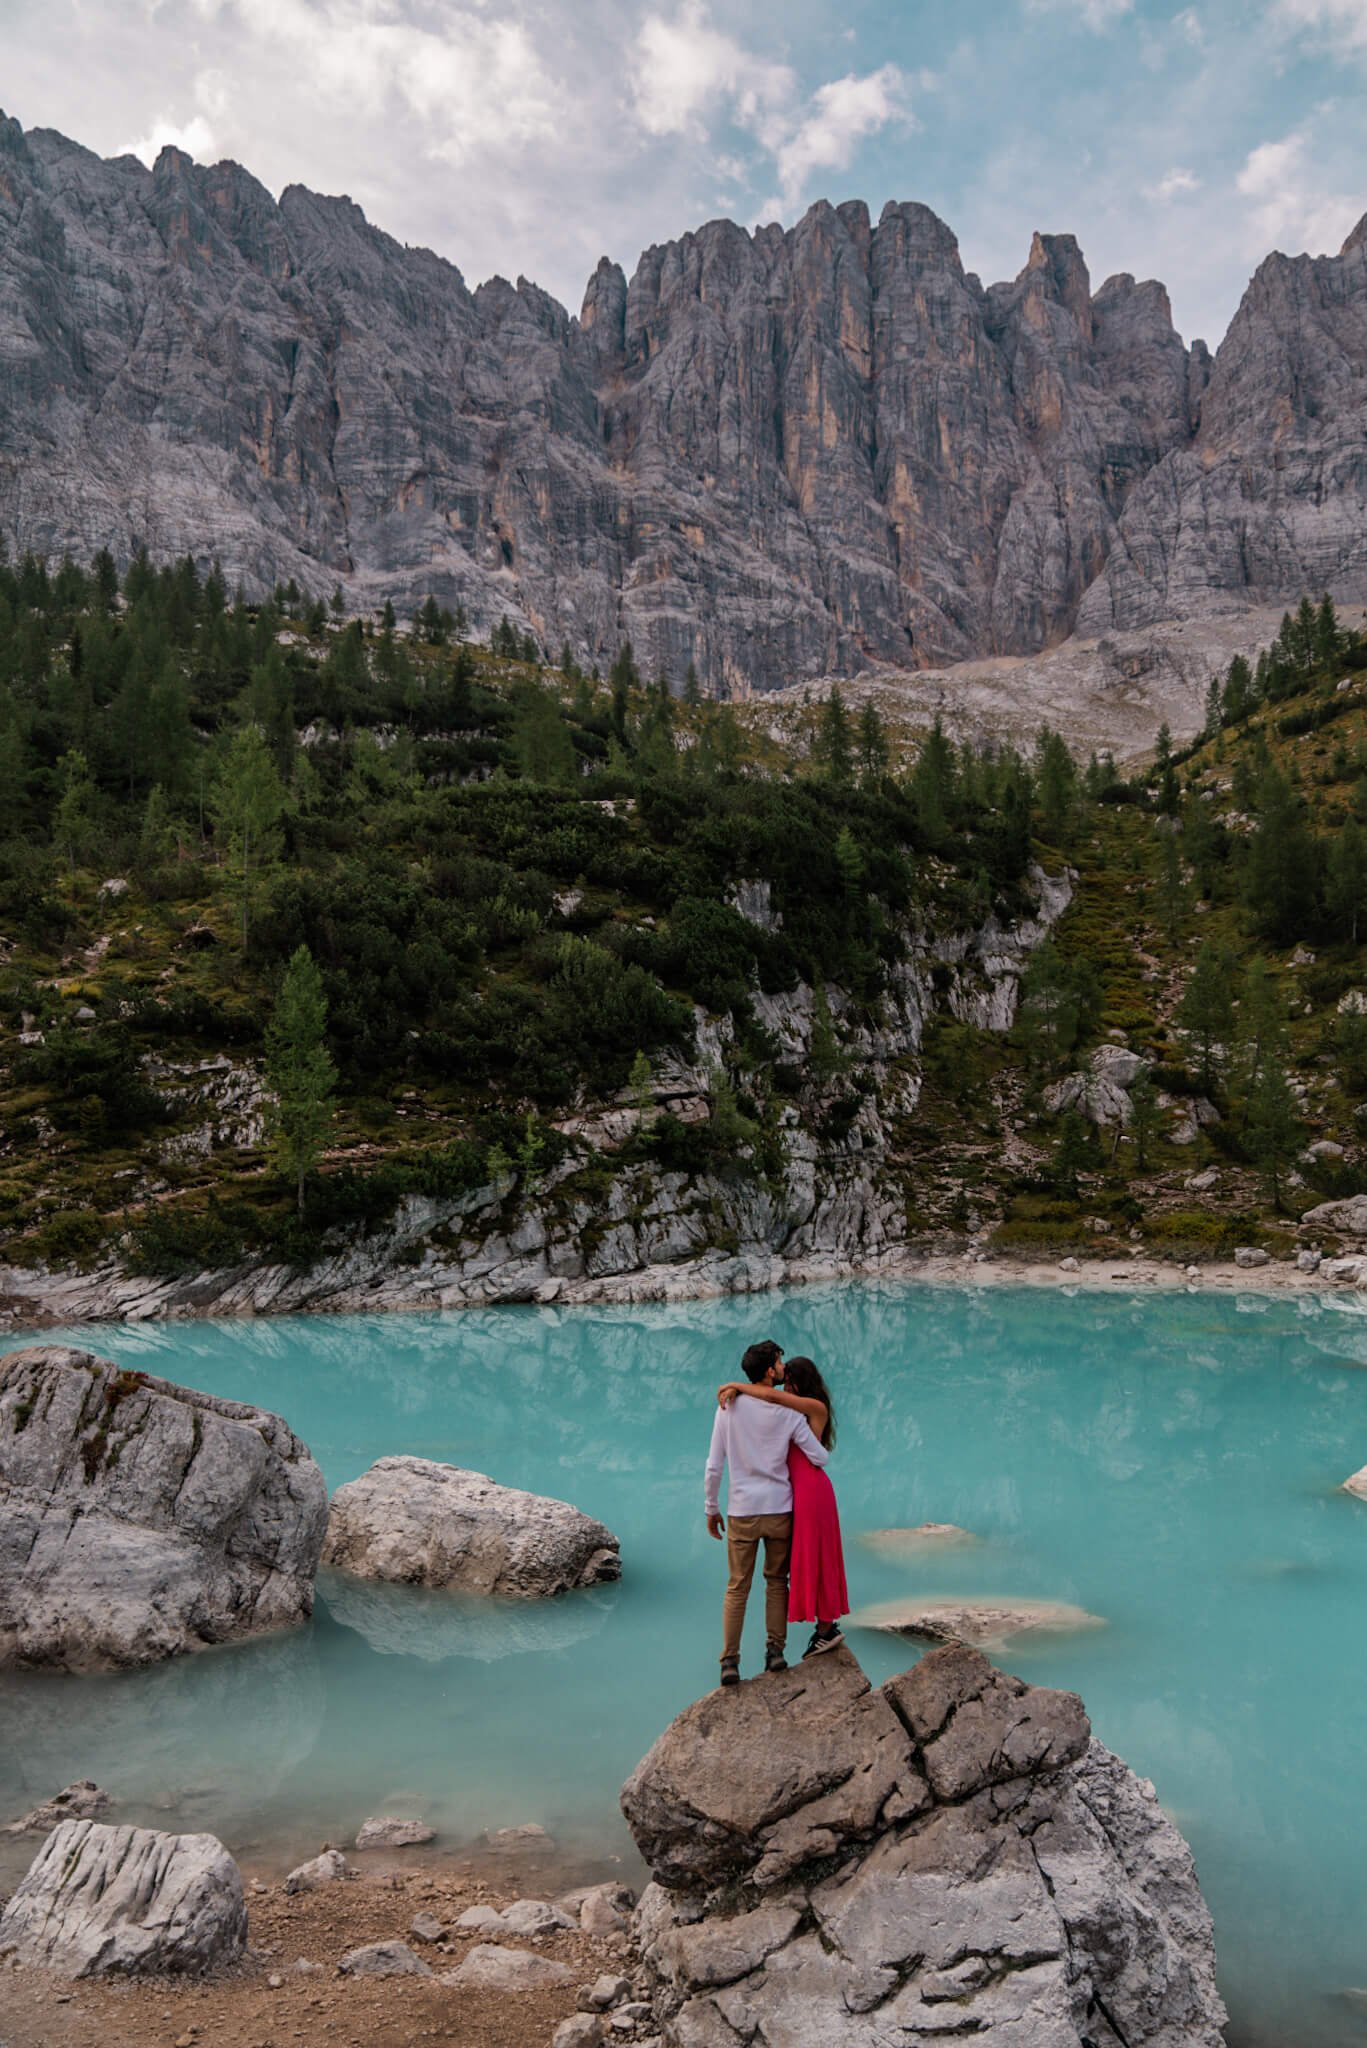 Lago di Sorapis in the Dolomites, Italy